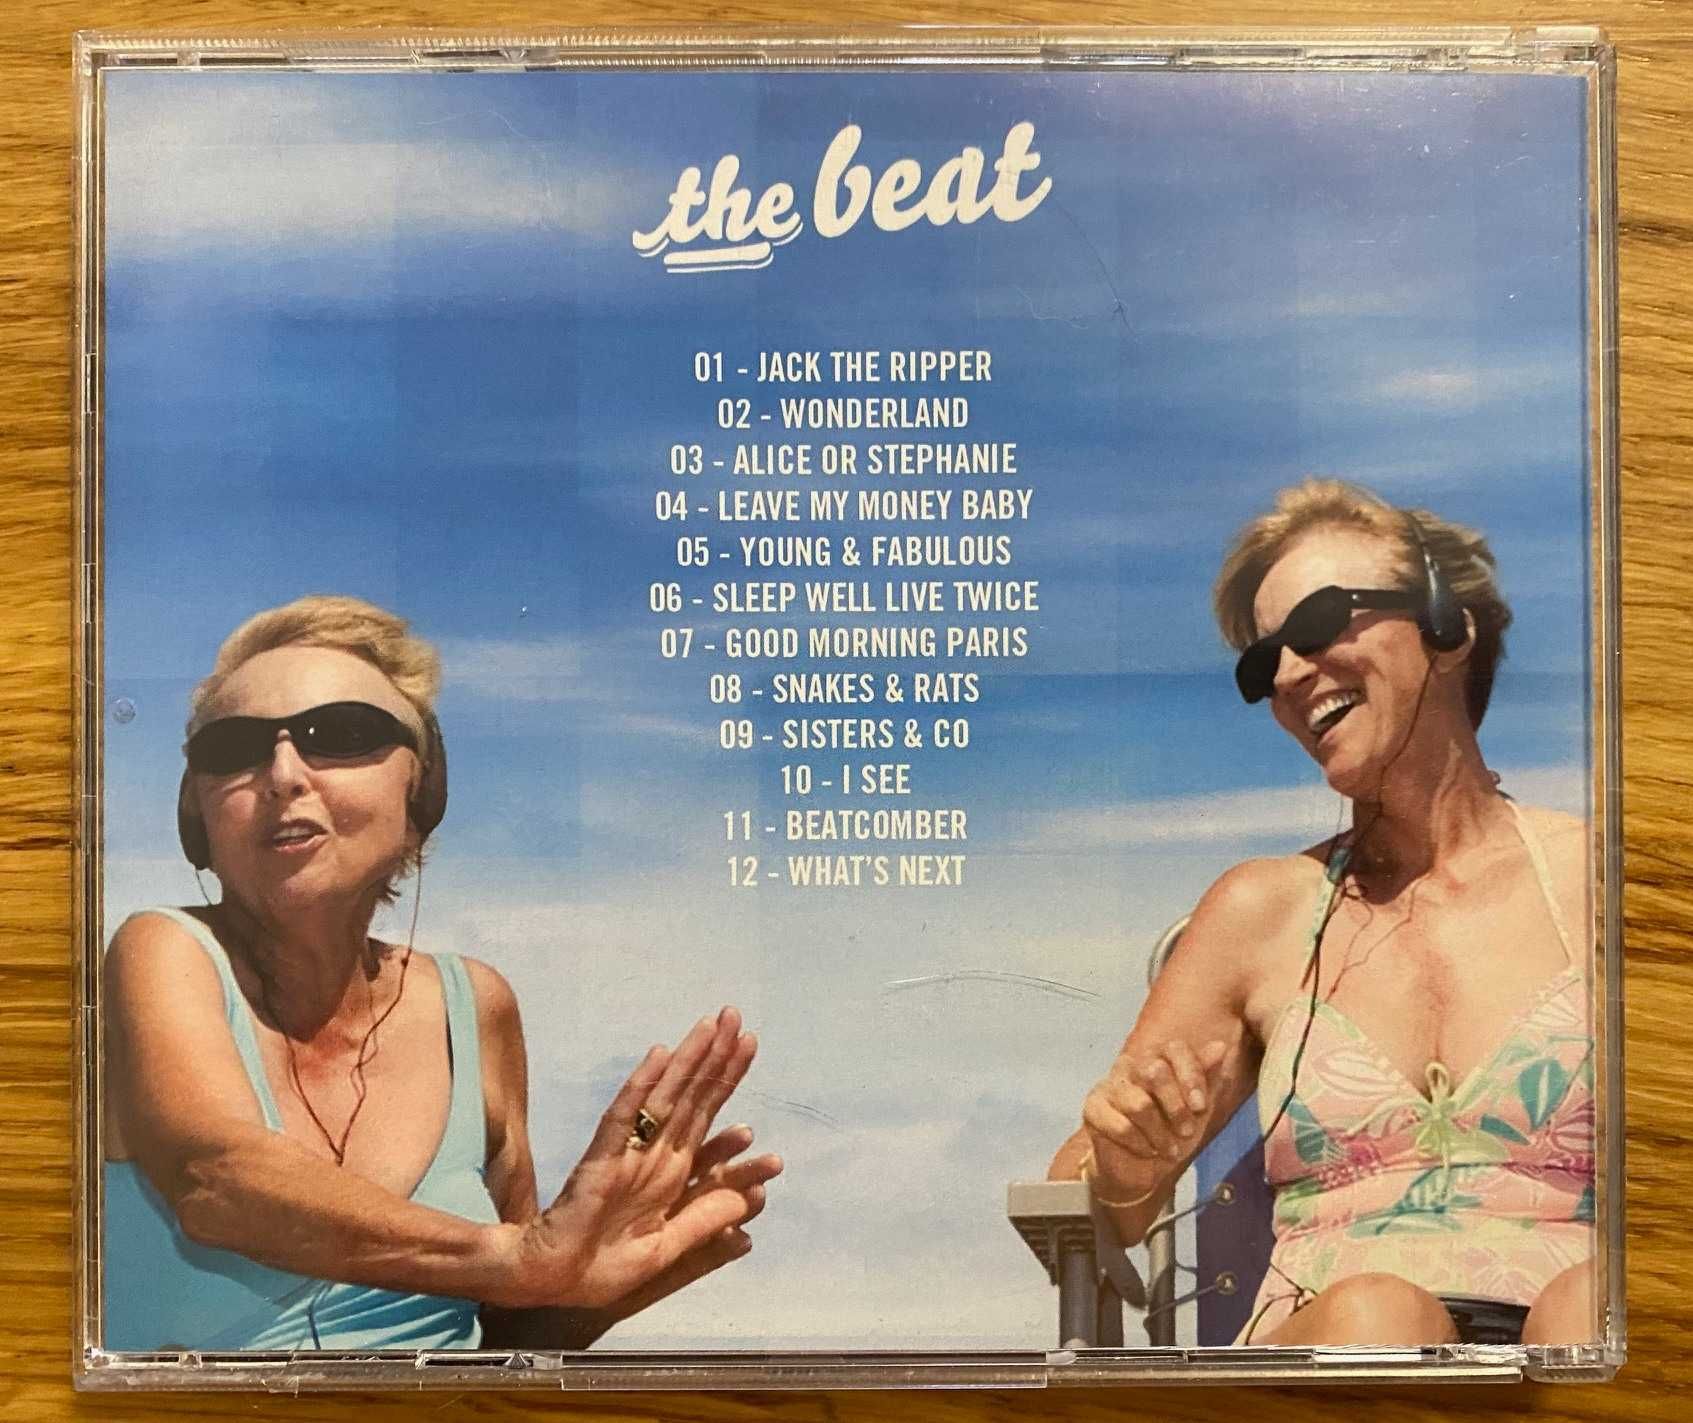 The Stumps - The Beat. Дебютний альбом гурту з Франції